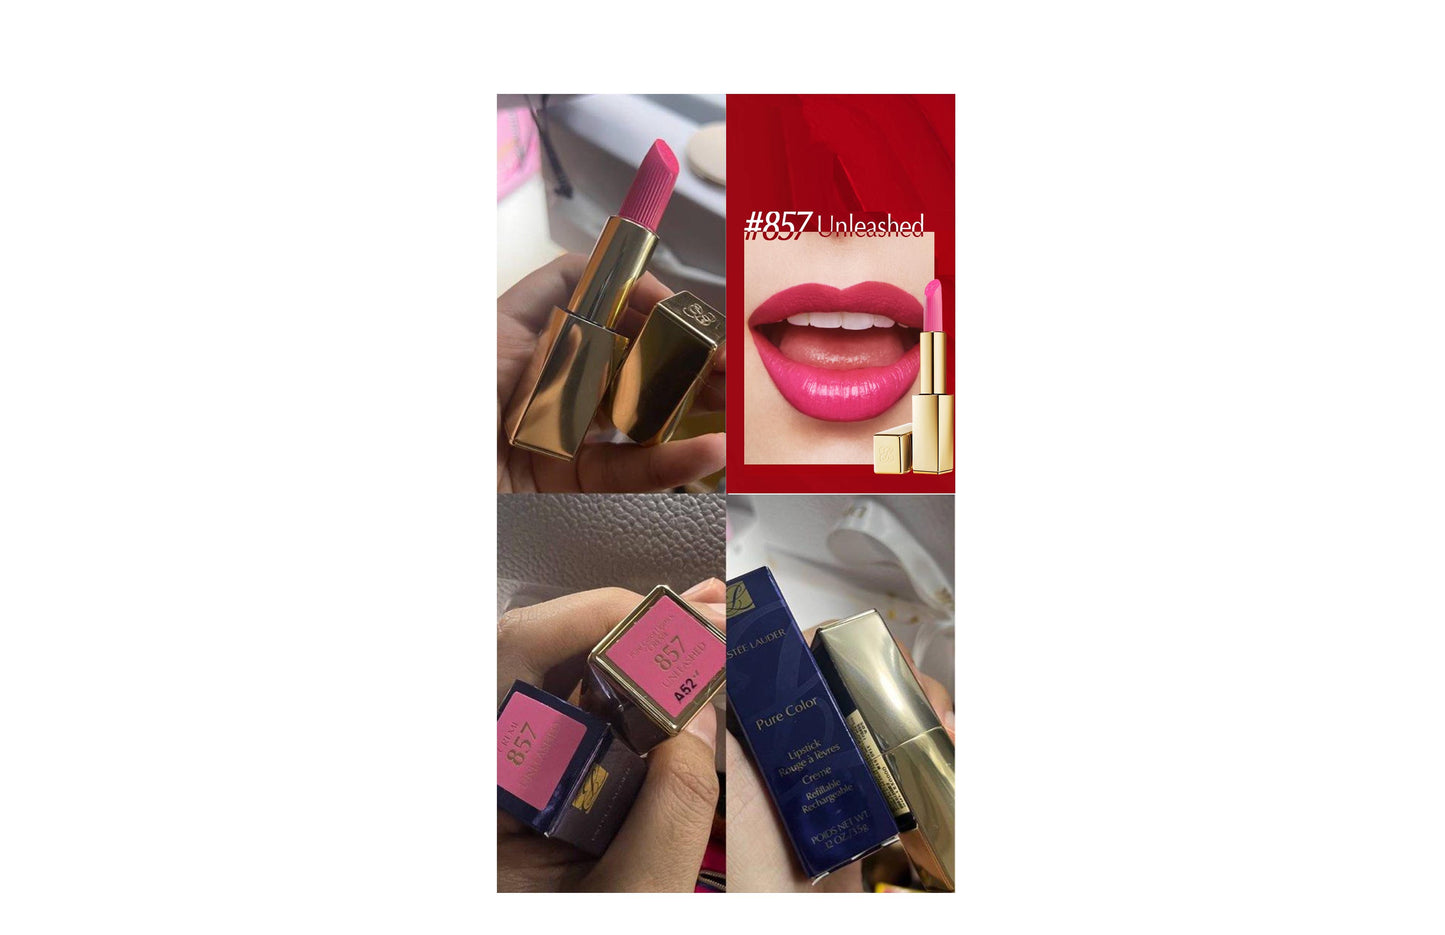 Estee Lauder Pure Colour Creme Lipstick Unleashed 857